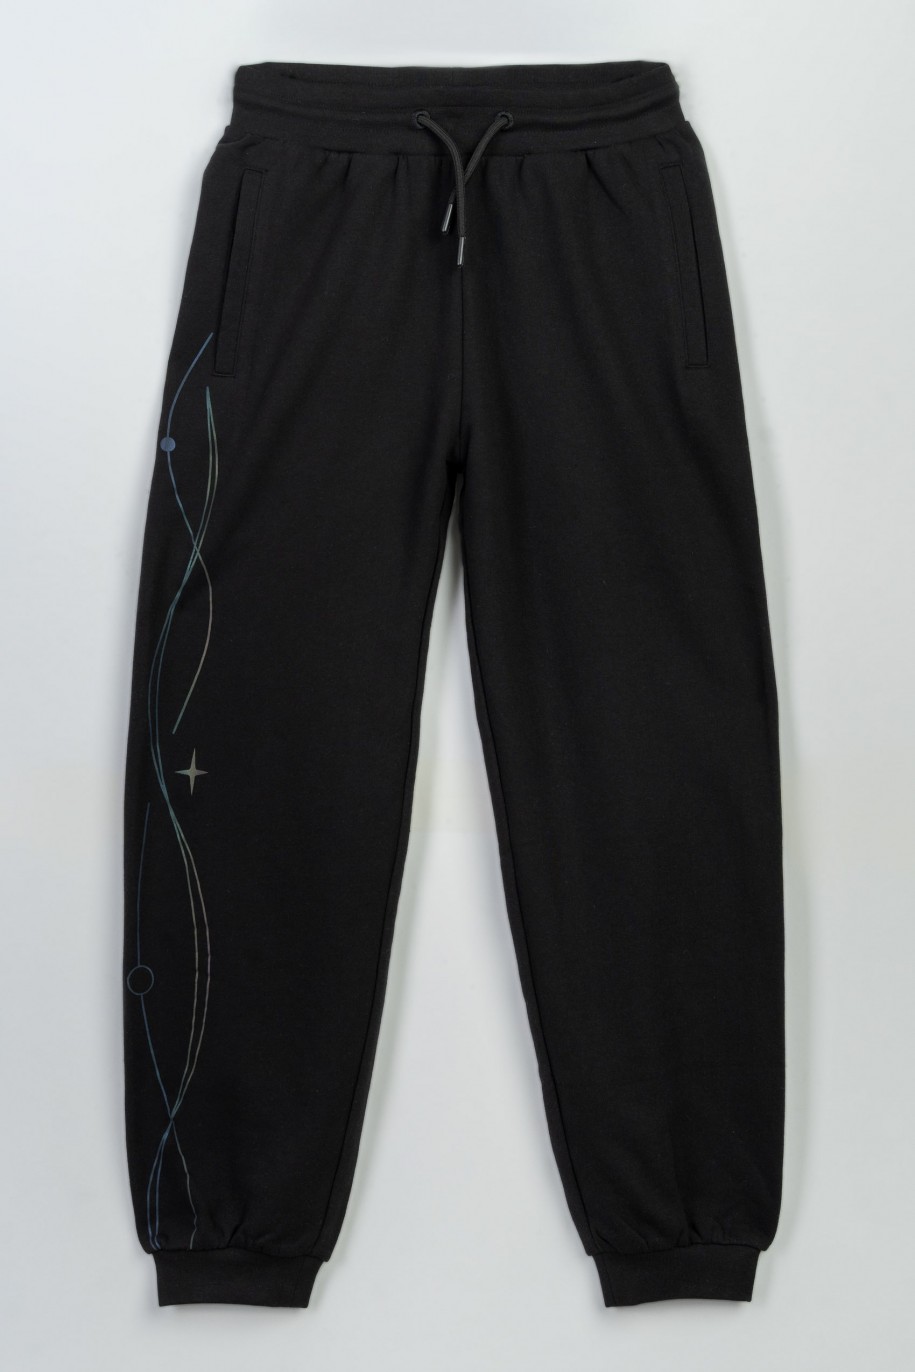 Czarne spodnie dresowe z hologramowym nadrukiem na nogawce - 47263